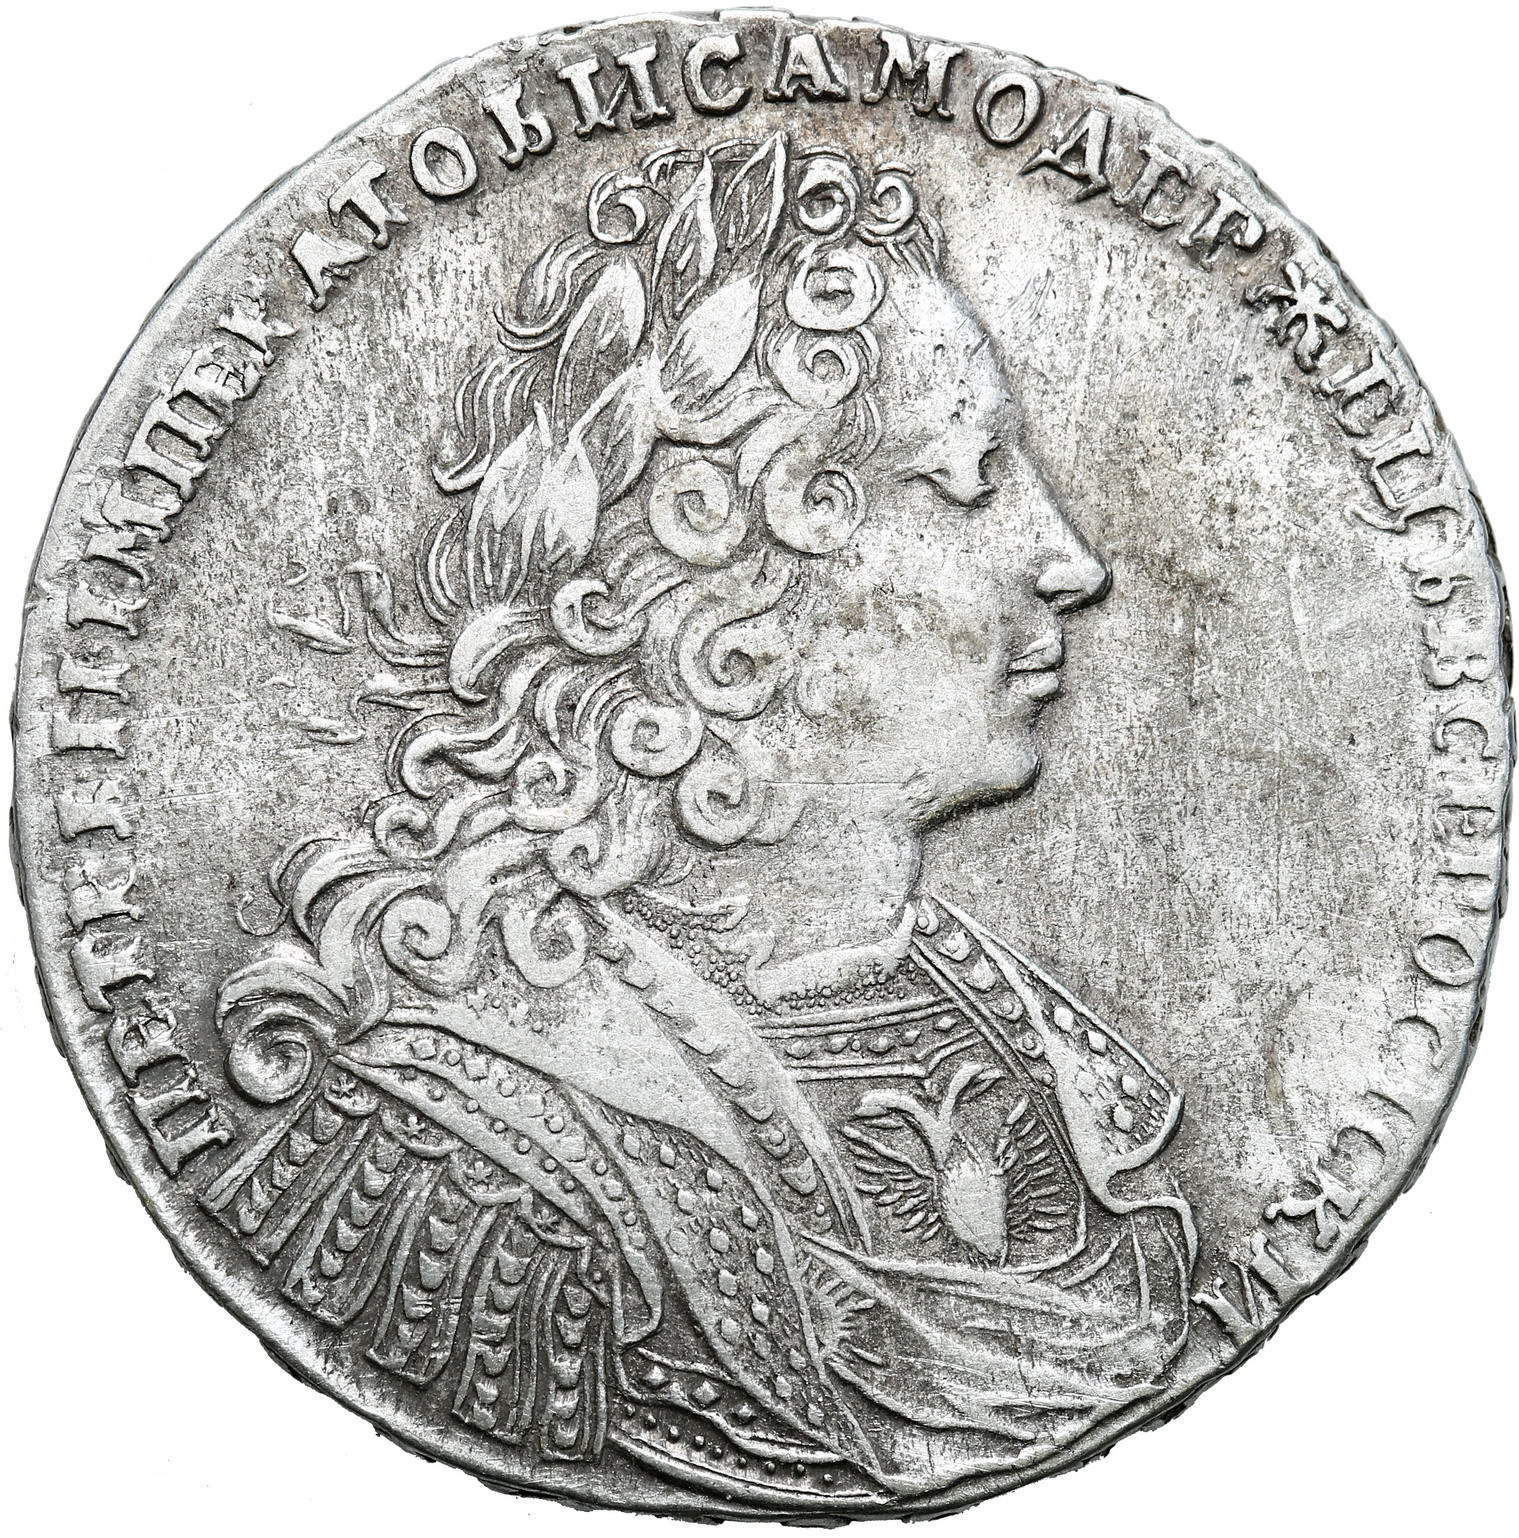 Rosja, Piotr II. Rubel 1728, Petersburg - RZADKI